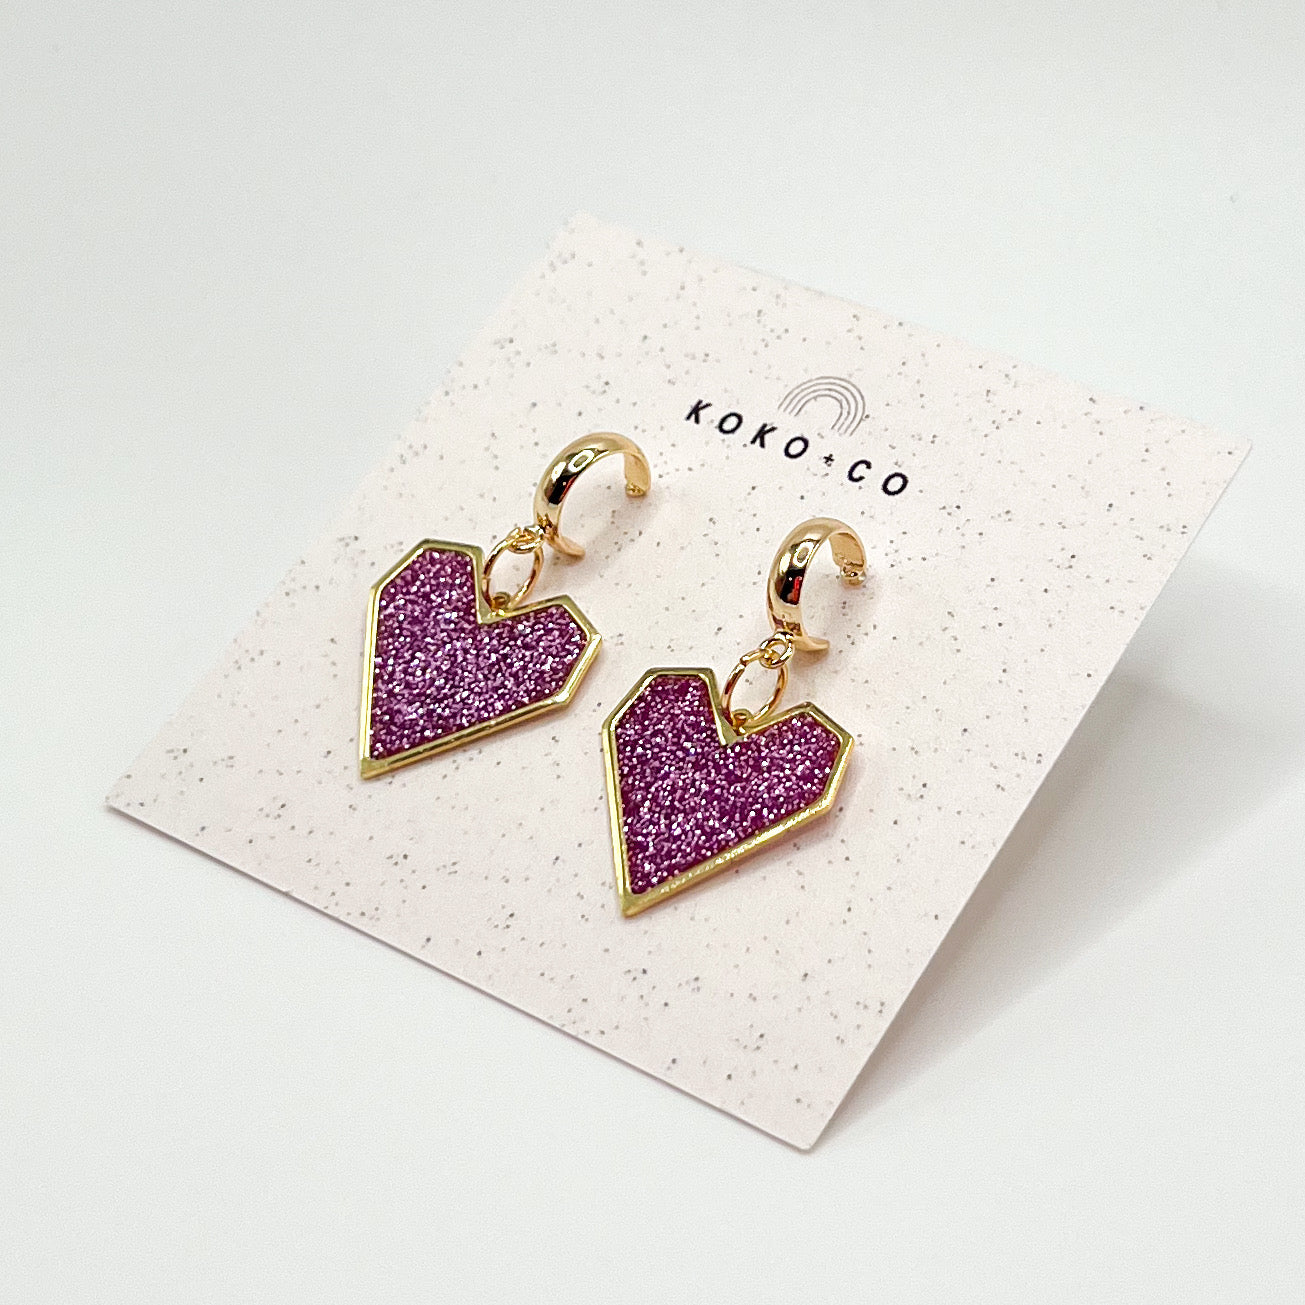 Pixel Heart Huggie Earrings in Iris Glitter